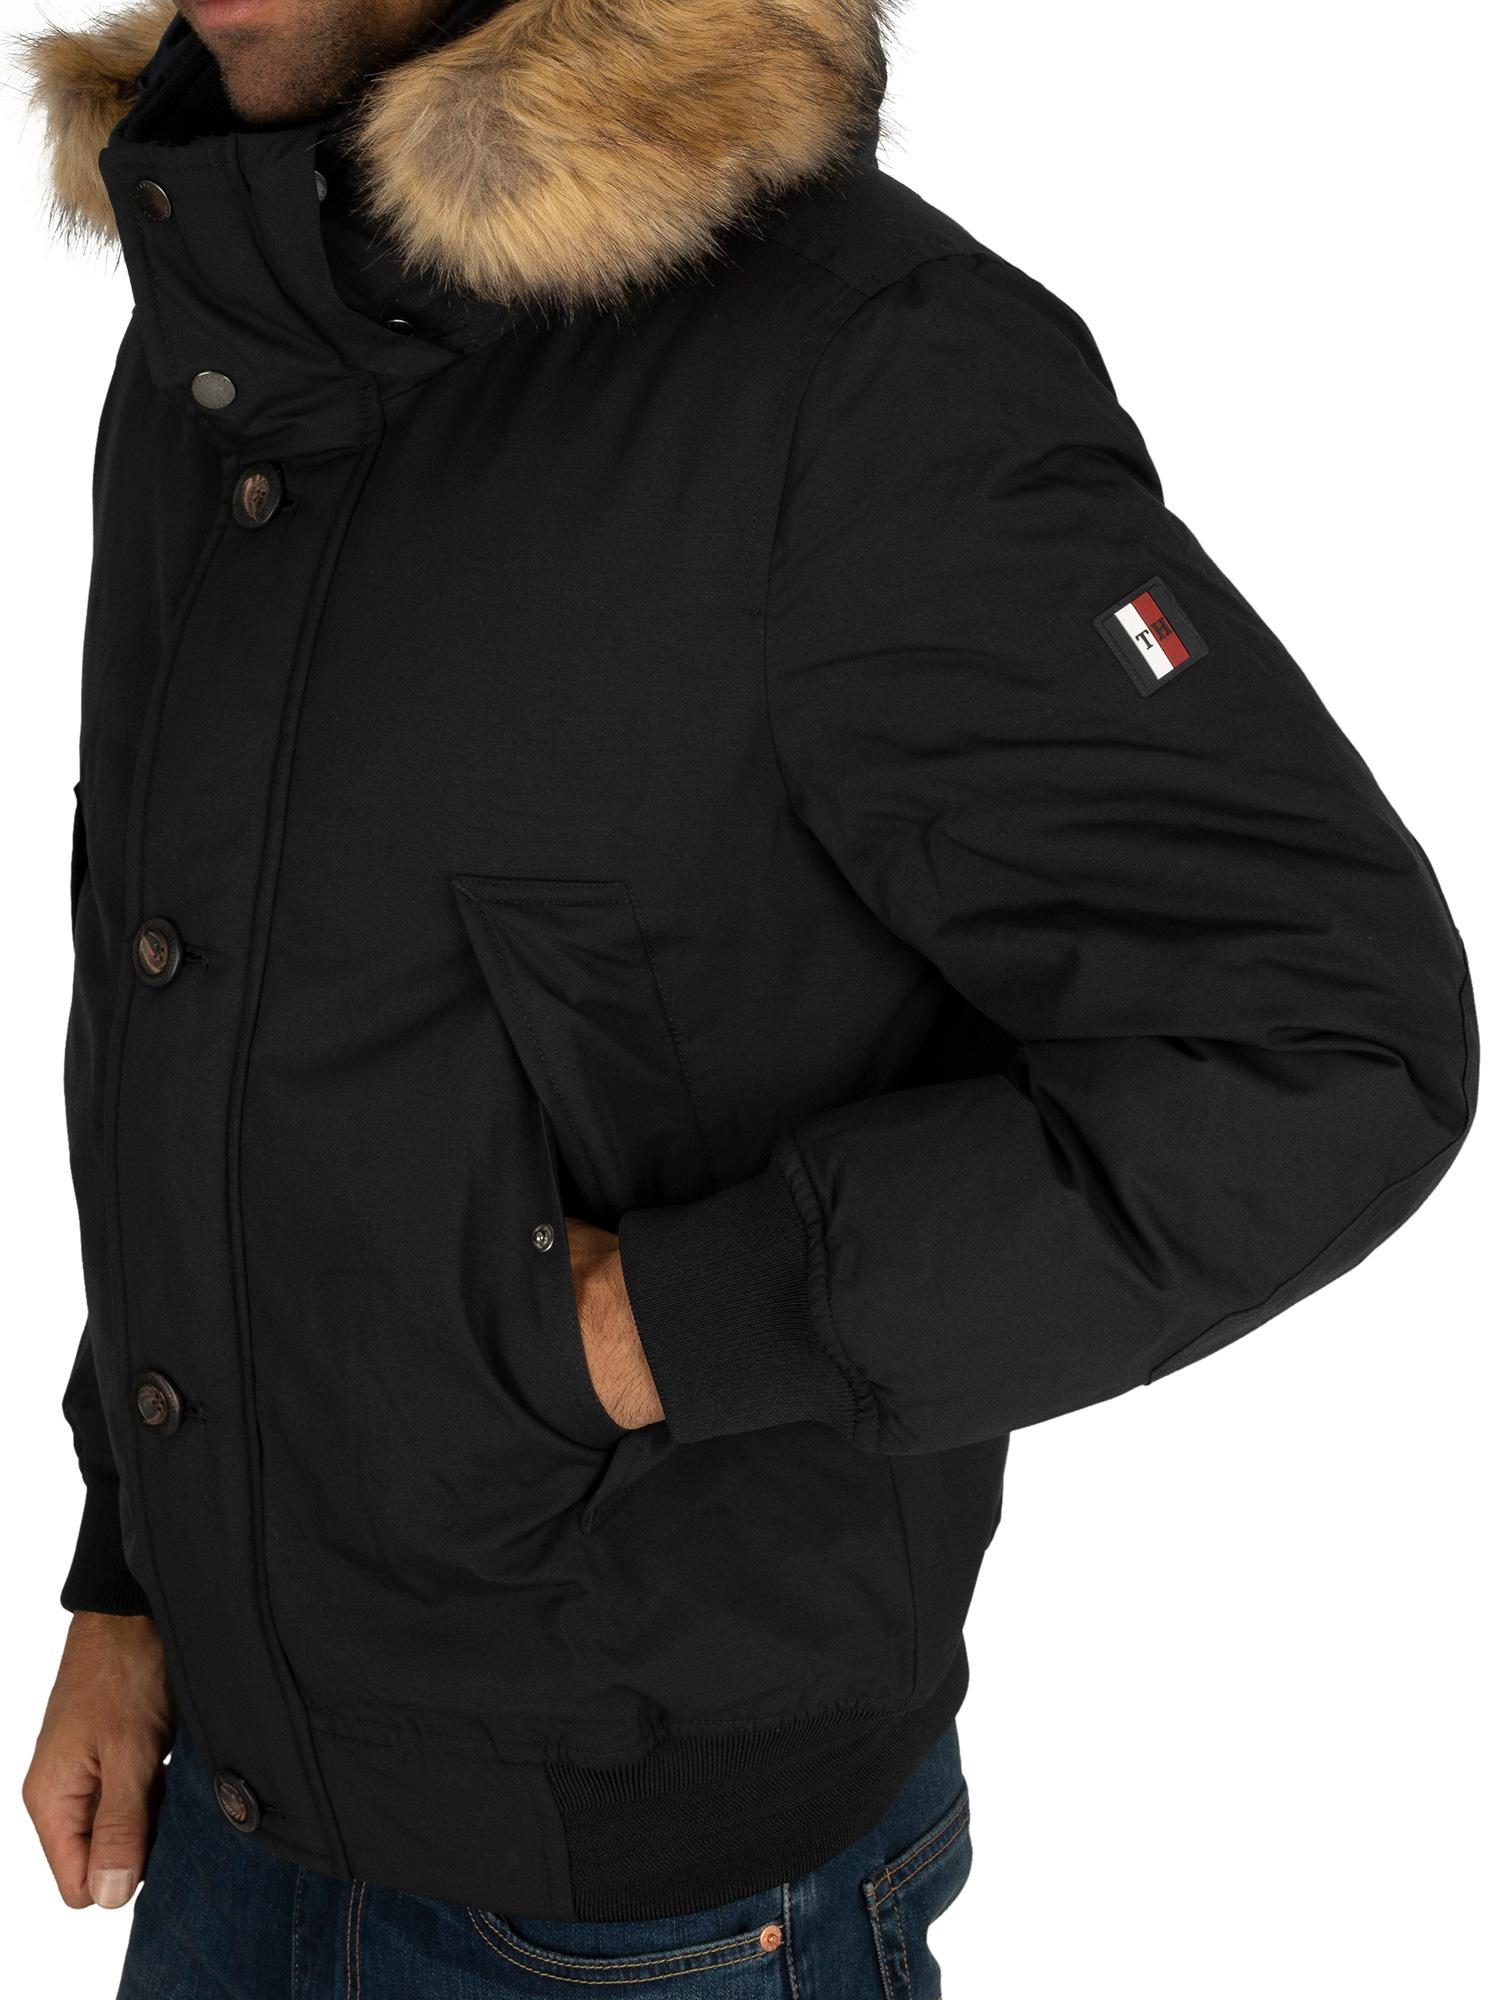 Tommy Hilfiger Fur Hampton Down Bomber Jacket in Black for Men - Lyst